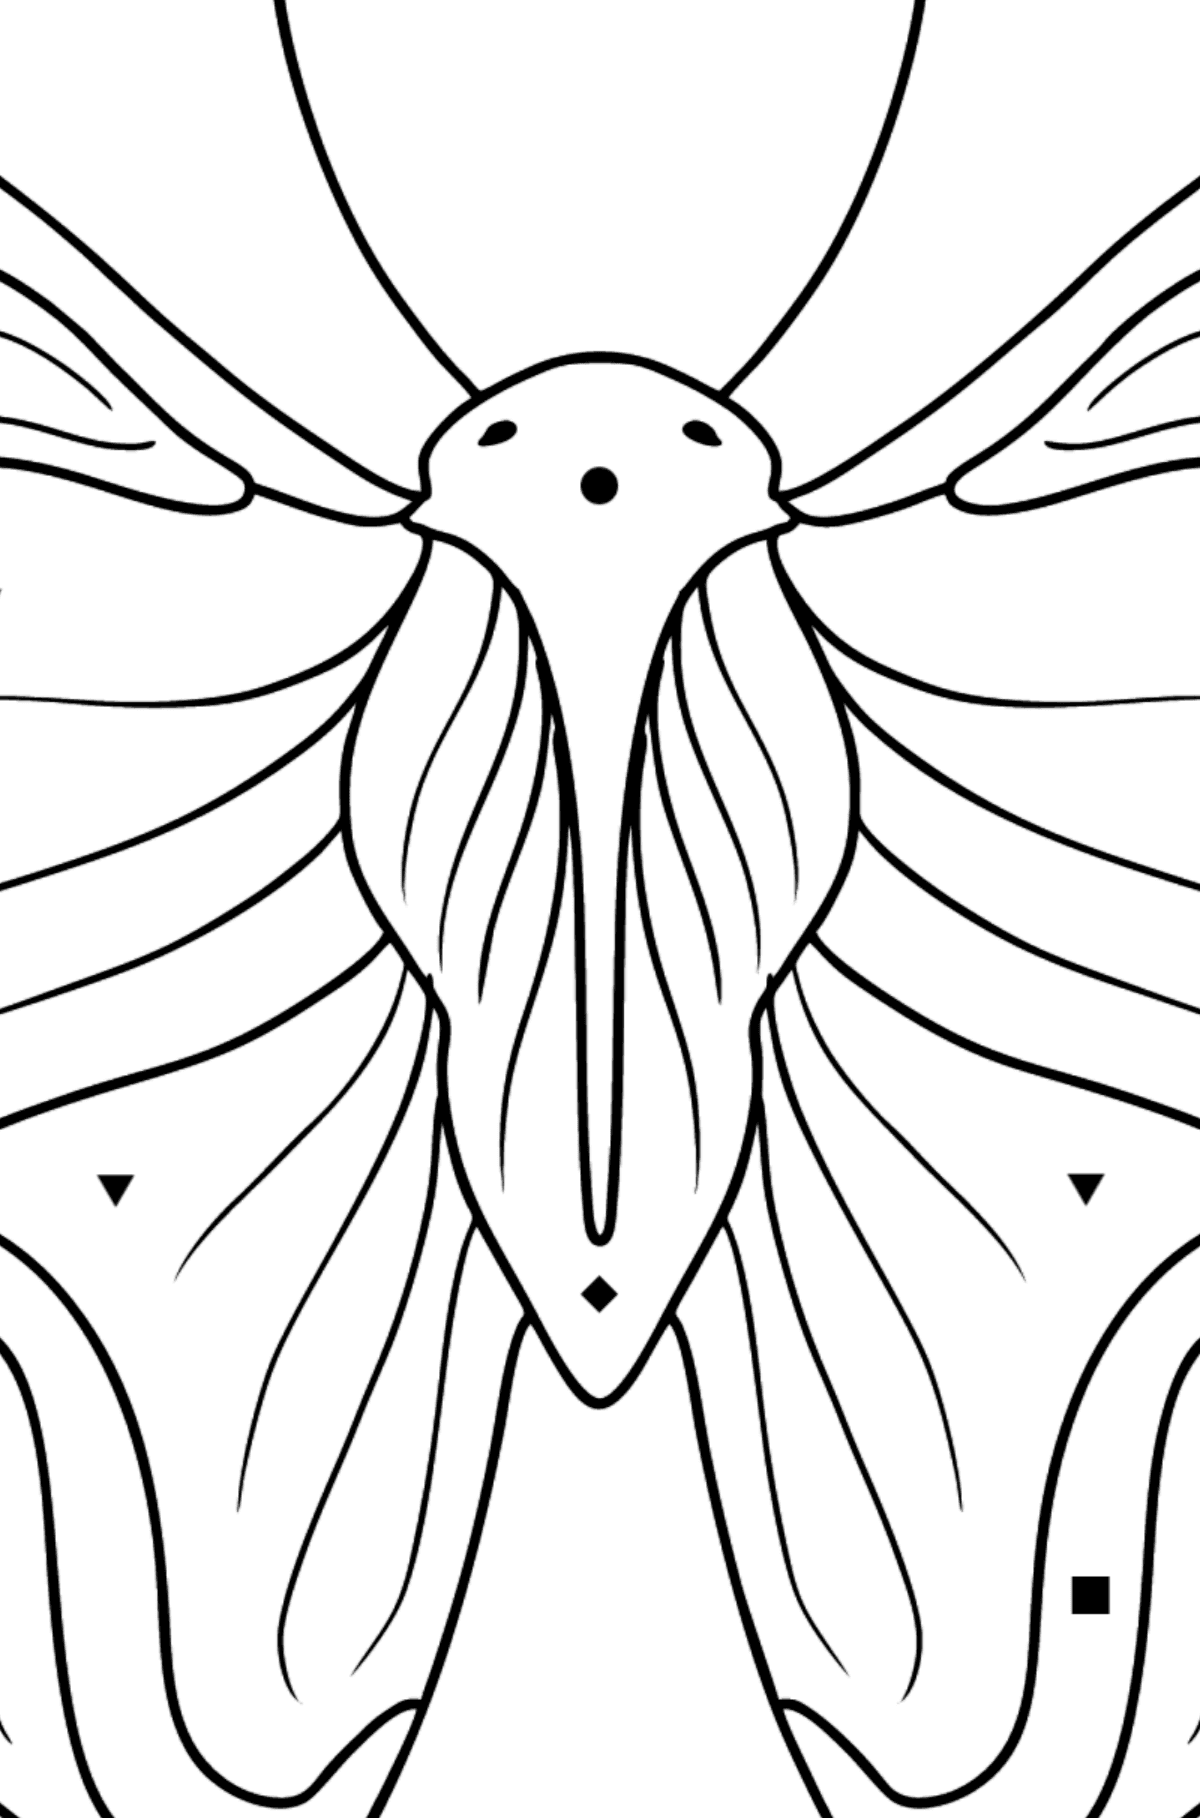 Dibujo de Almirante Butterfly para colorear - Colorear por Símbolos para Niños